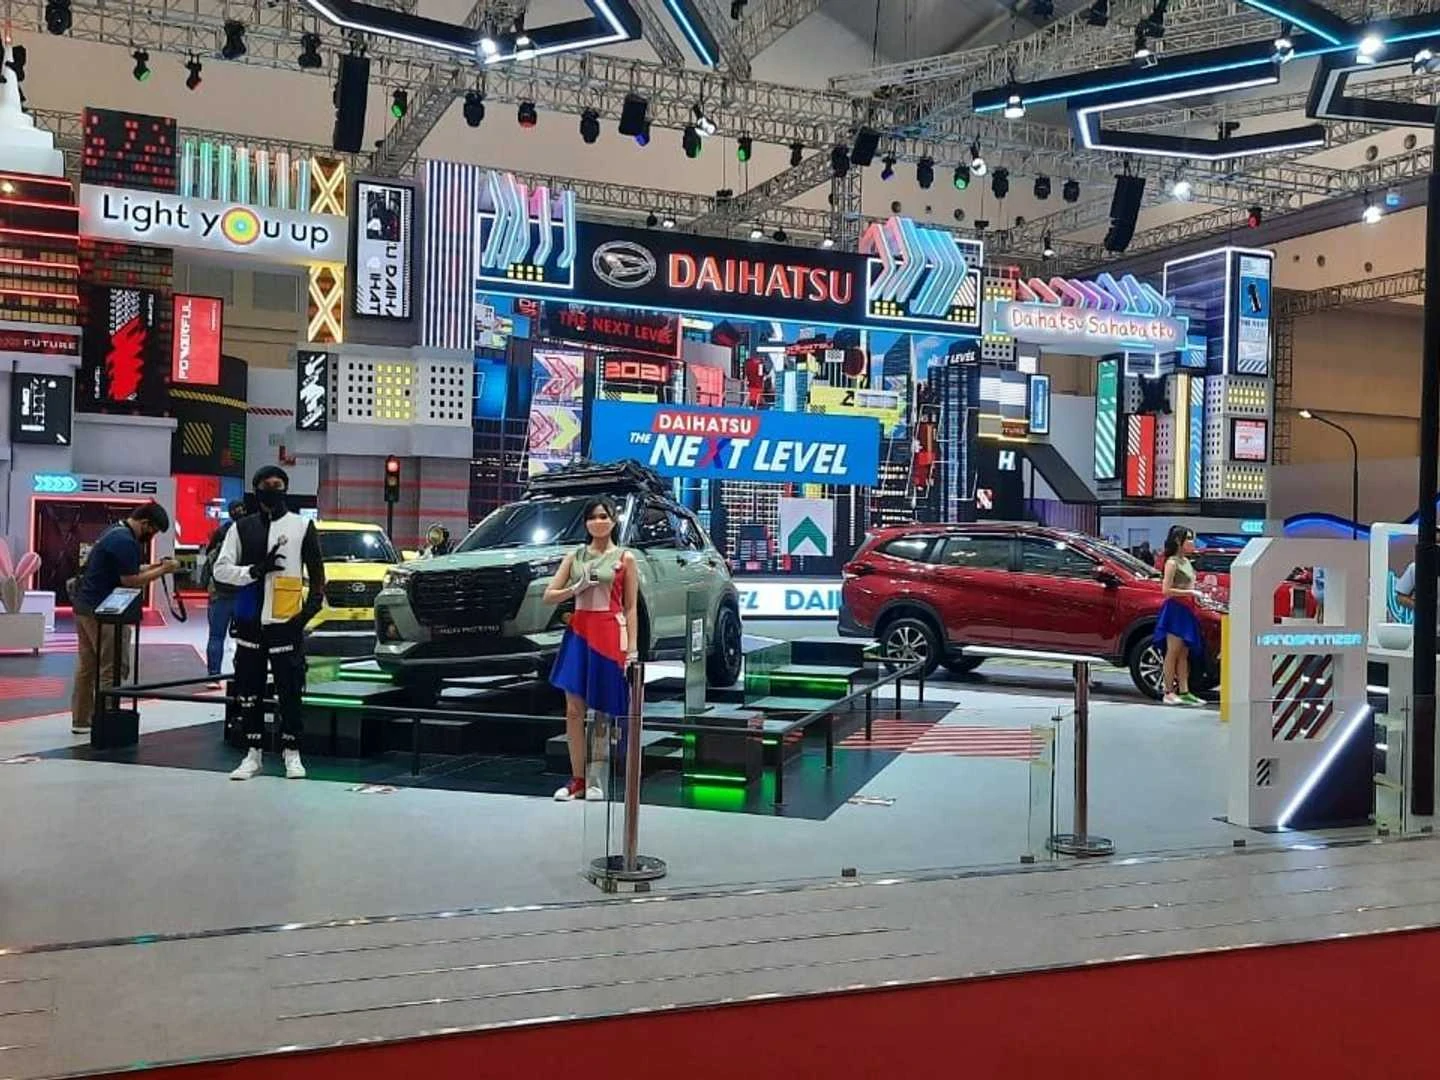 Daftar Harga Mobil Daihatsu Indonesia Terupdate Per Januari 2022